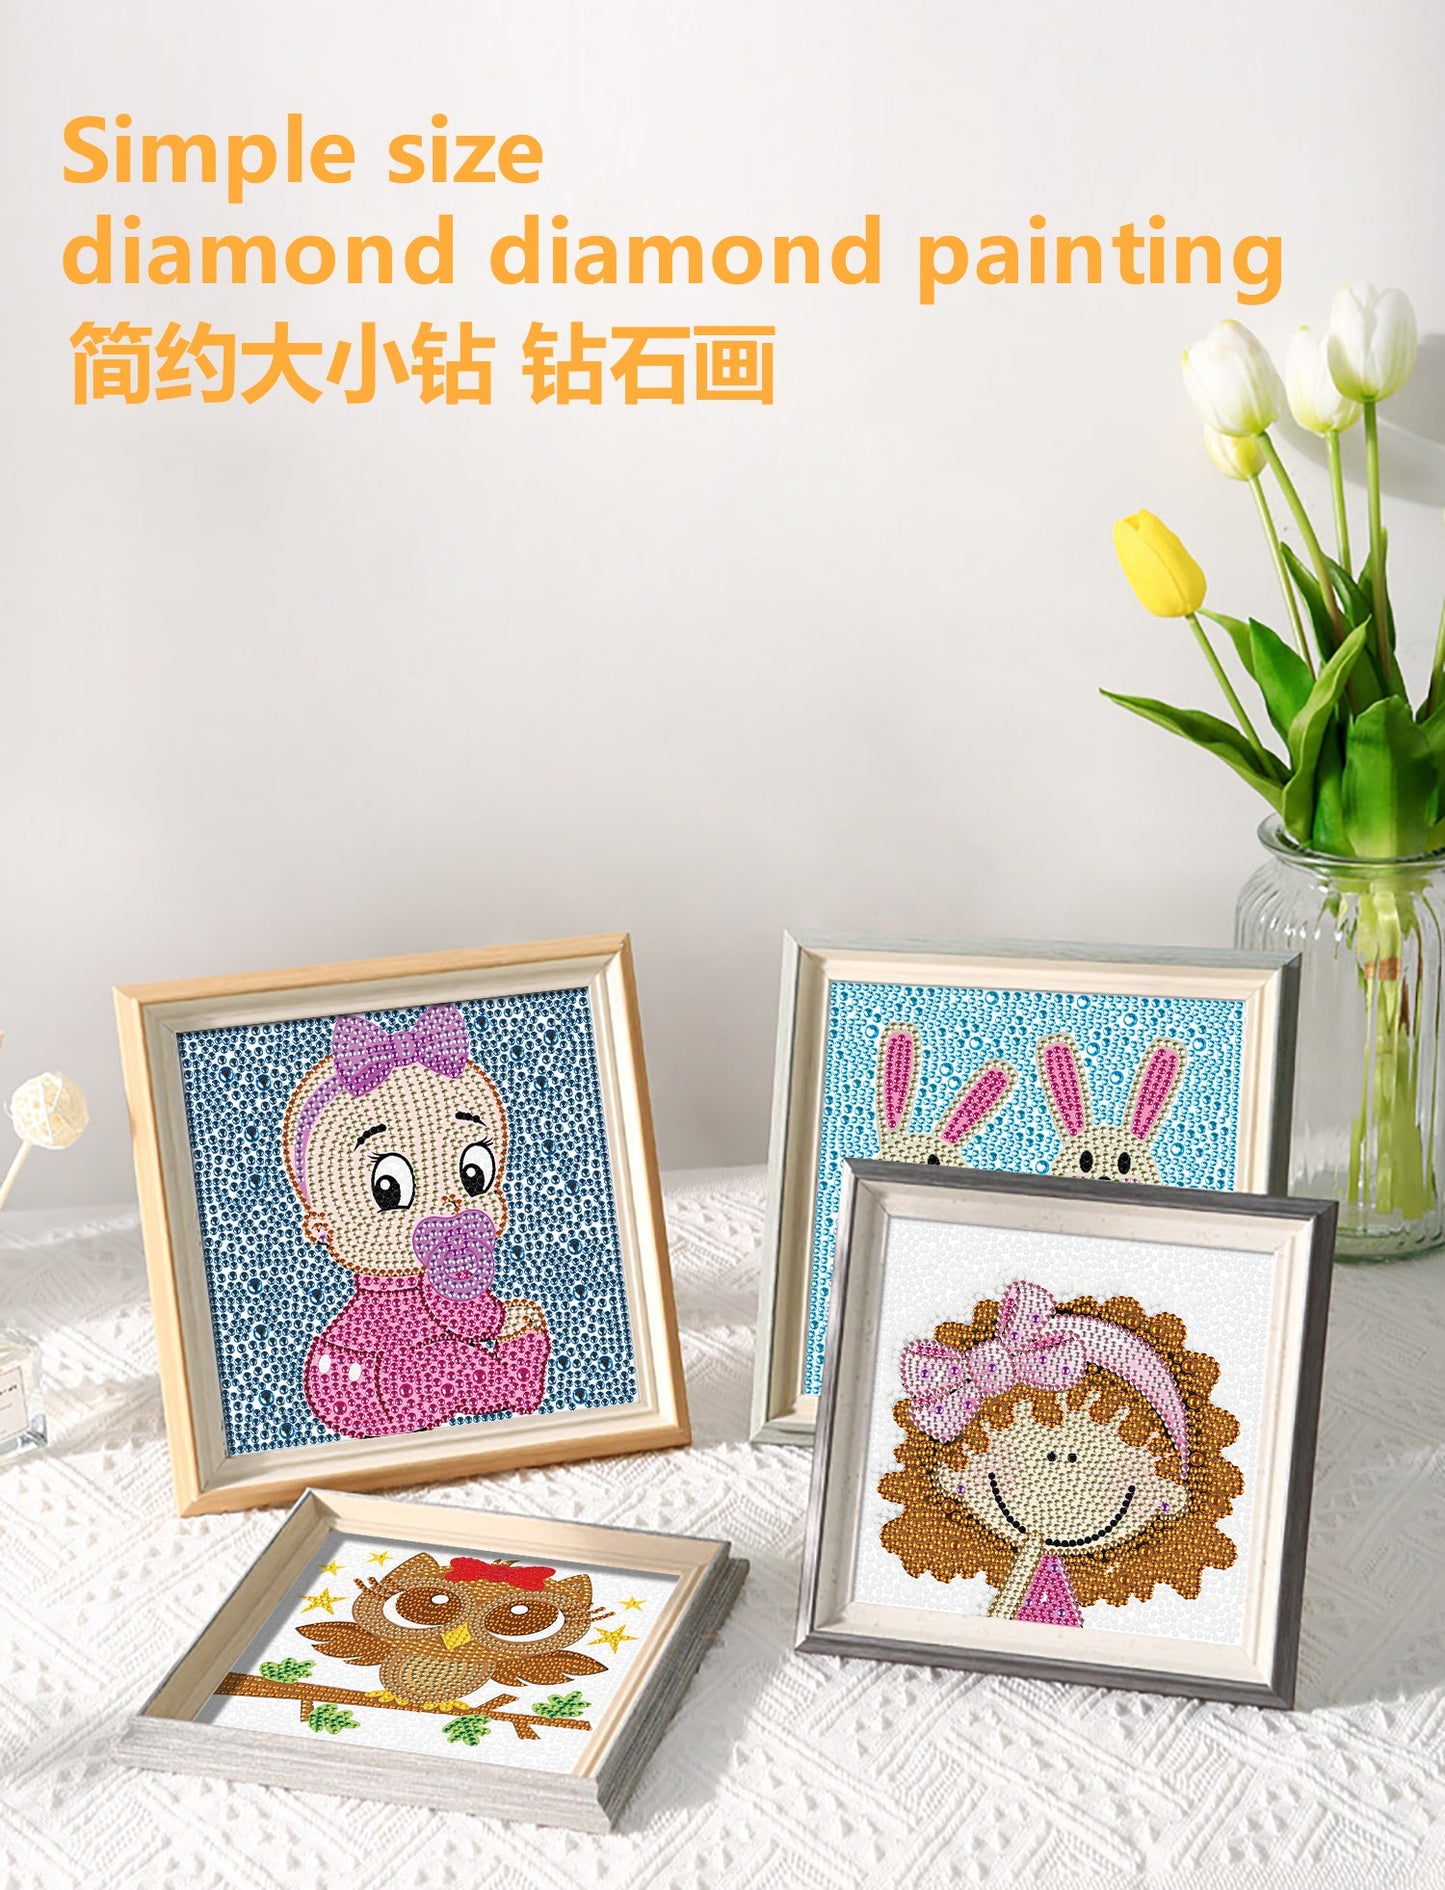 Children's Series | Baby | Crystal Rhinestone Diamond Painting Kit